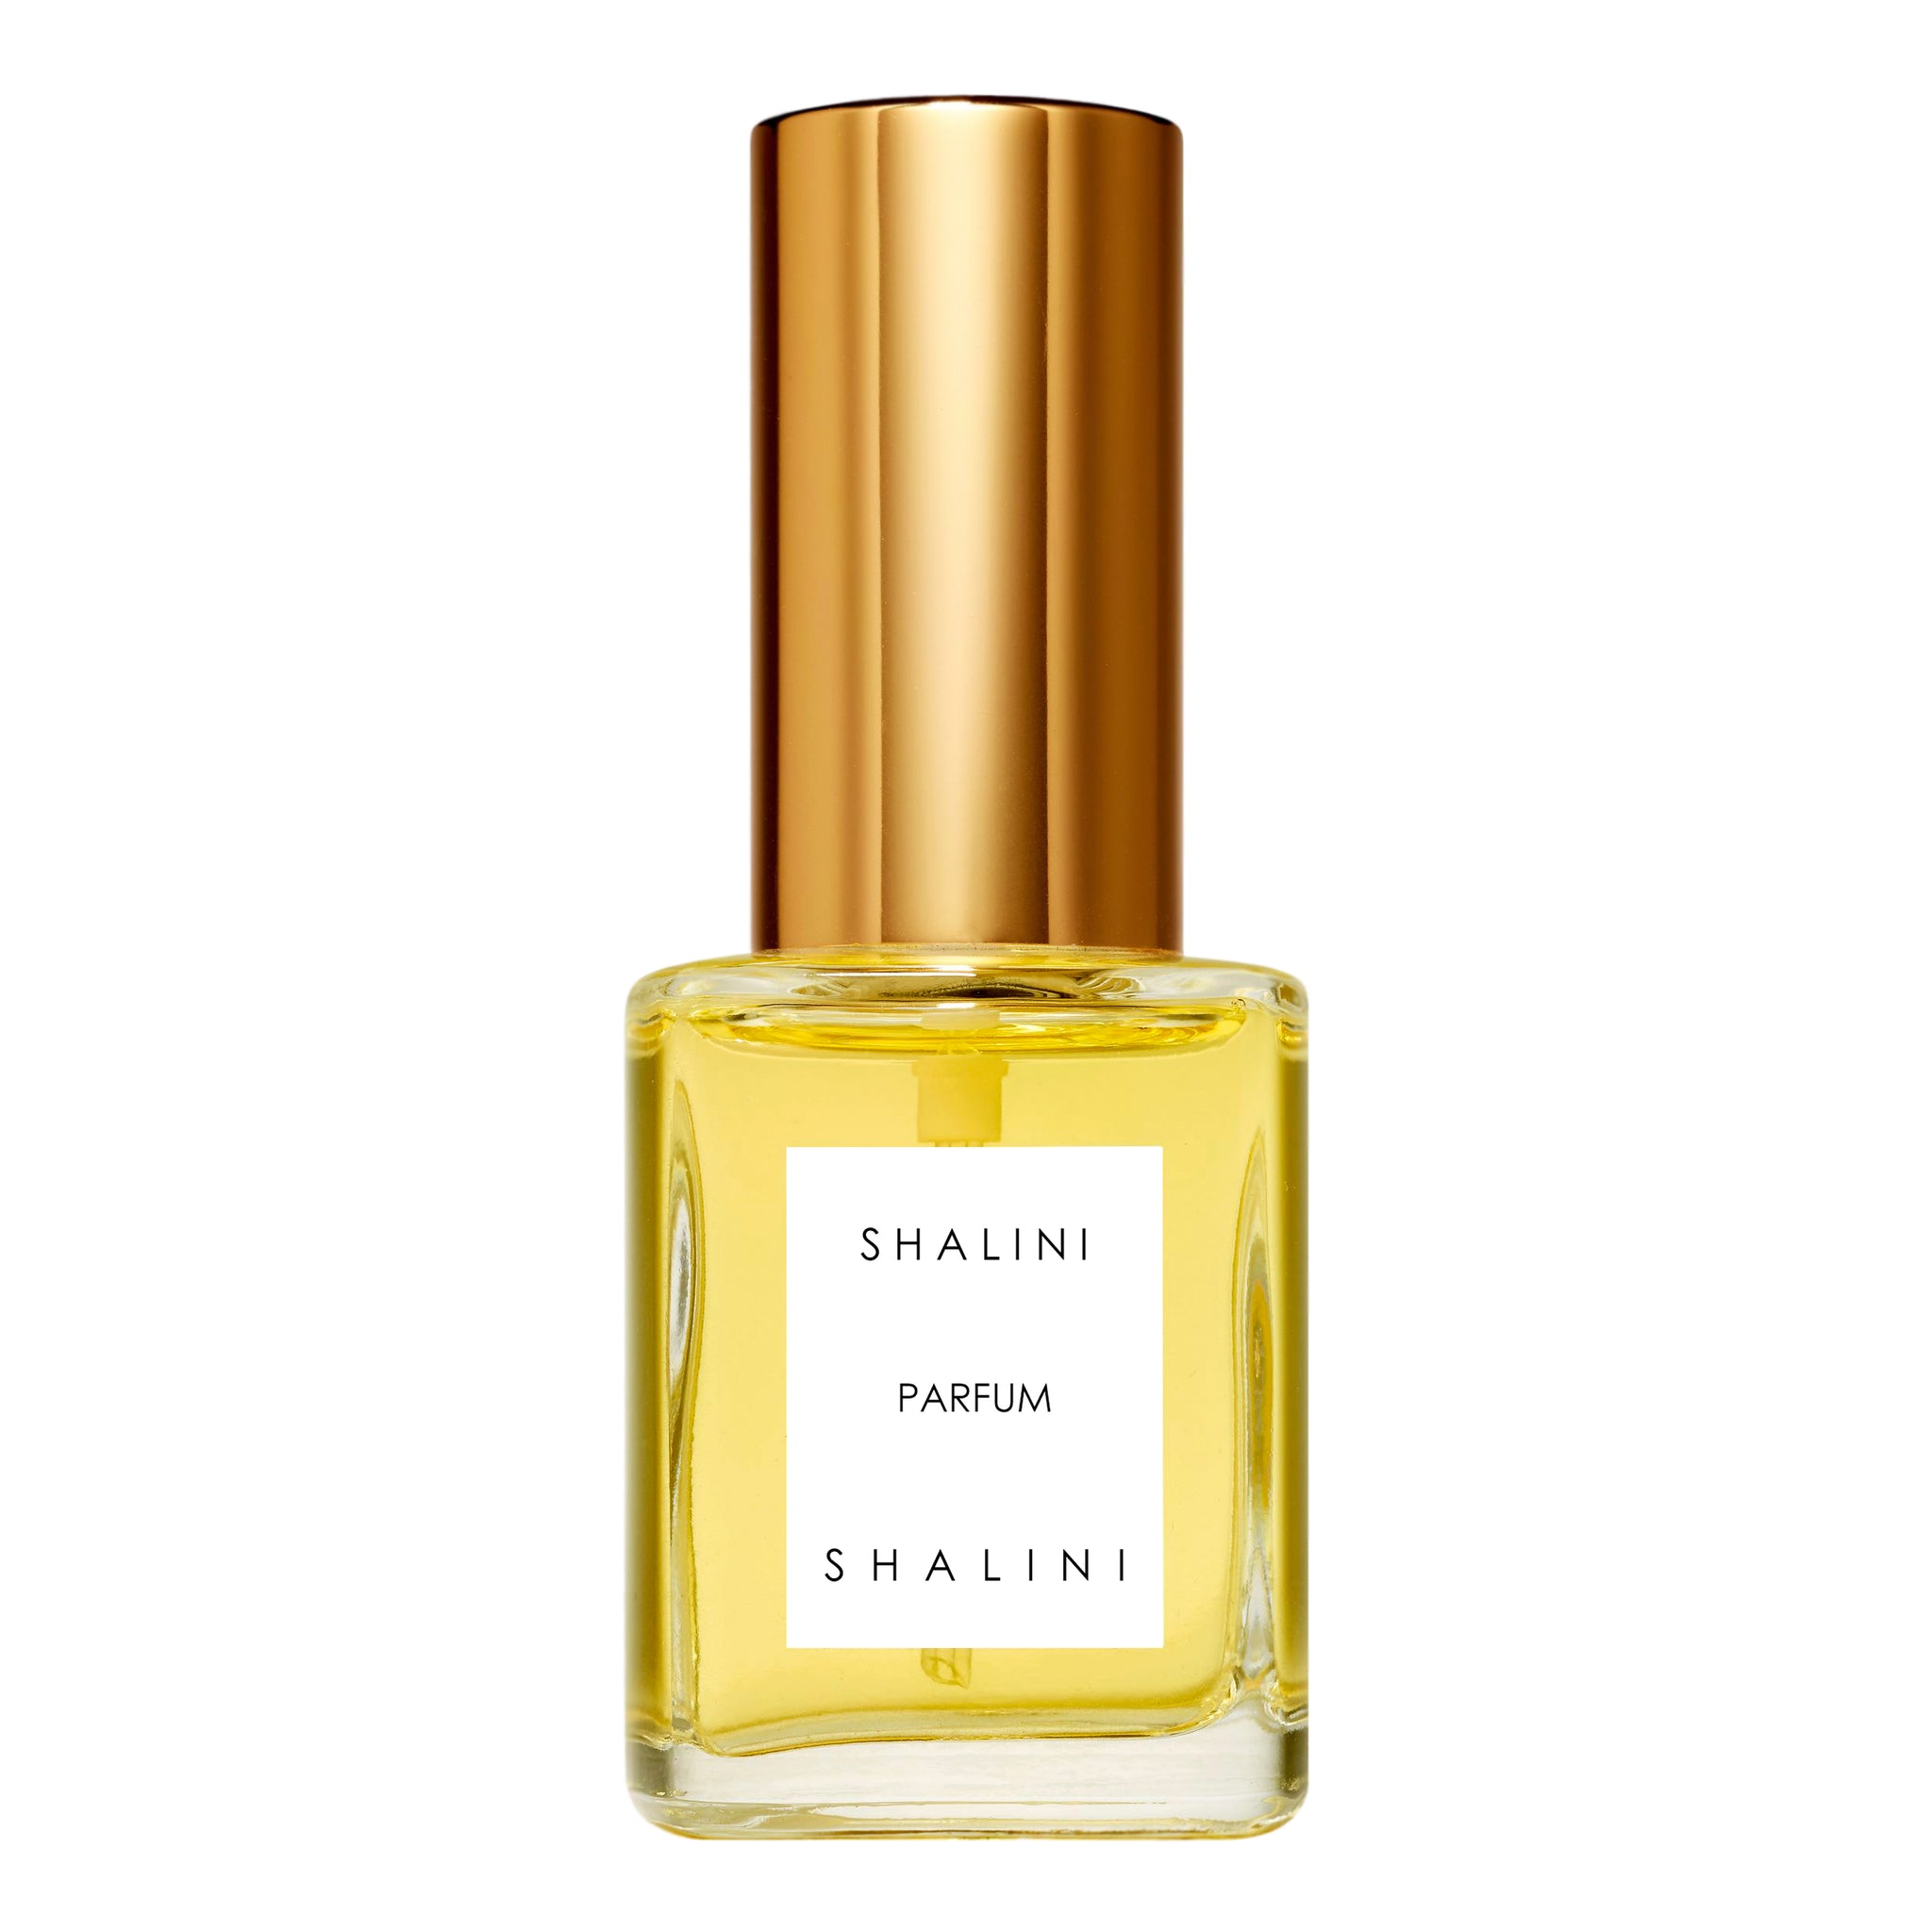 Vanille Rêve Parfum  Luxury Spray Bottle — SHALINI PARFUM